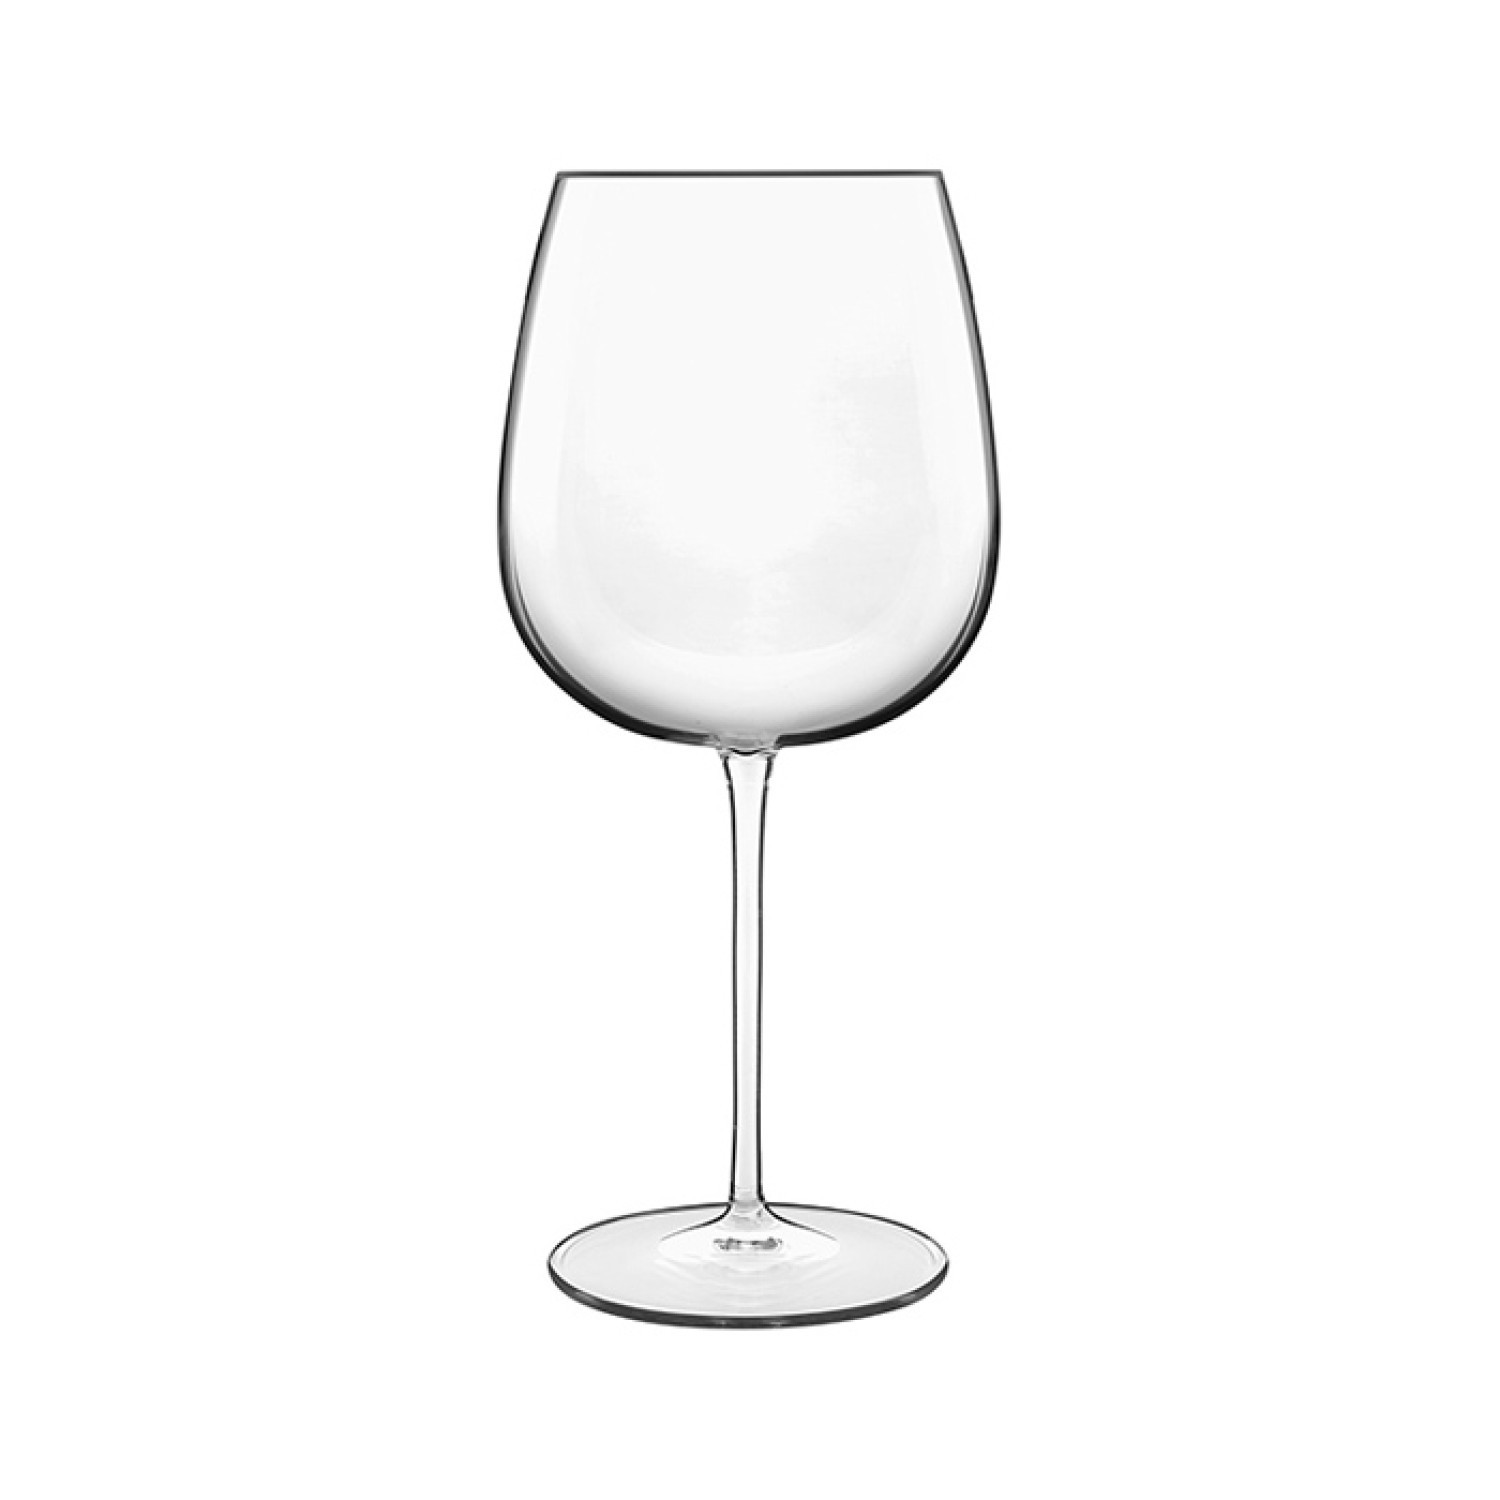 Ποτήρι Κρασιού Κρυστάλλινο Σετ 6Τμχ. Barolo / Shiraz 750ml Meravigliosi Luigi Bormioli